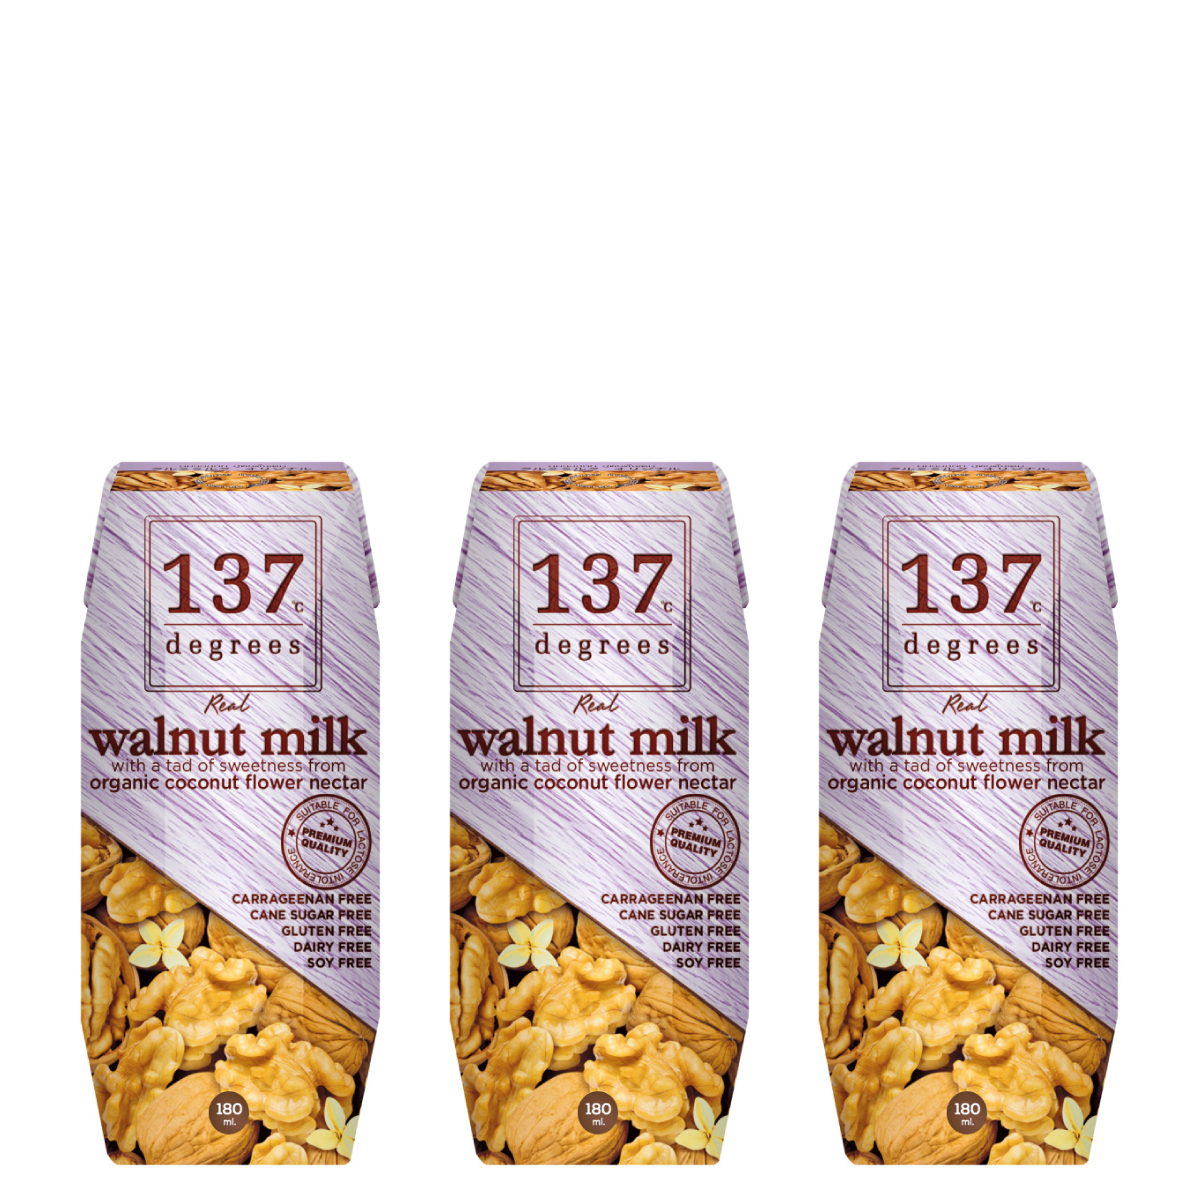 137 degrees Walnut Milk Original (3 x 180ml)